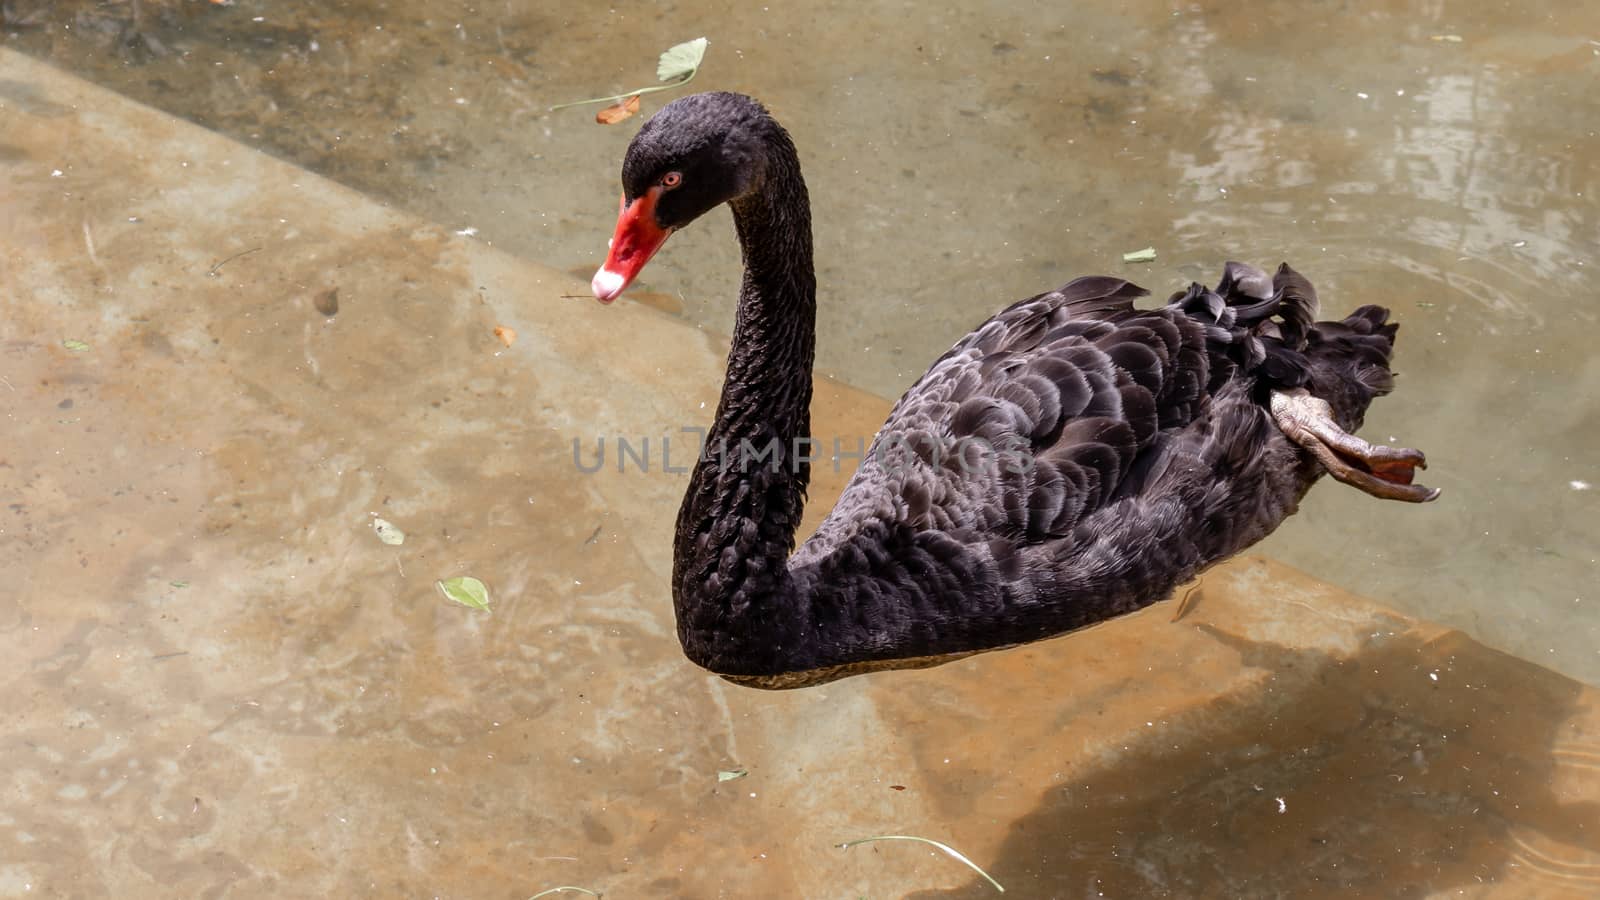 Black swan swimming in pond calmly